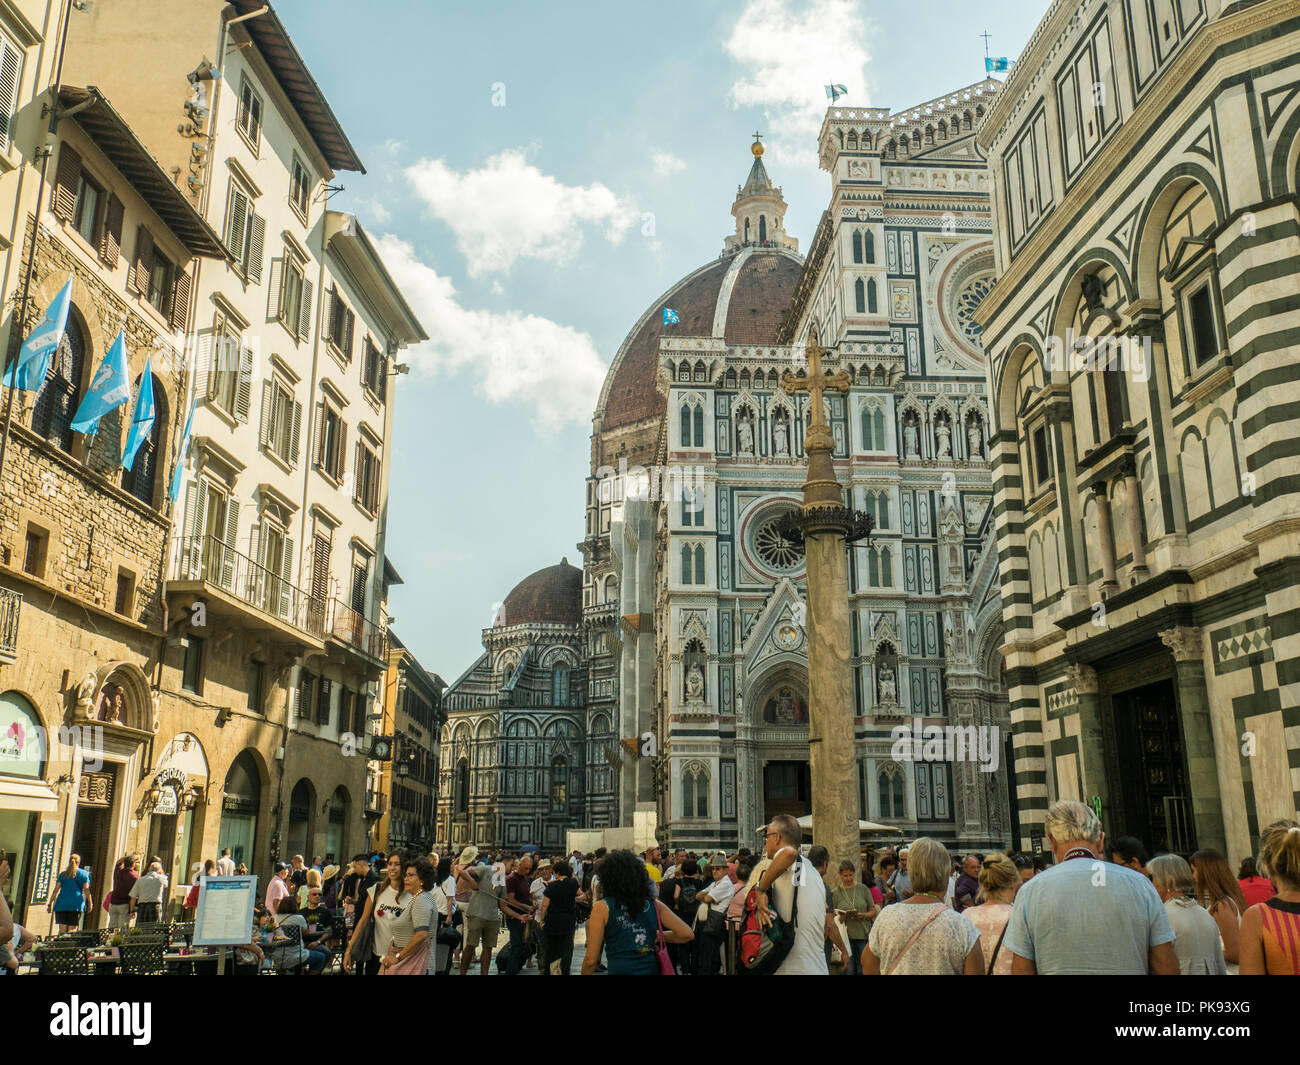 Florencia con el Bapistery de San Juan (extremo derecho) y la Catedral de Santa Maria del Fiore (centro), Toscana, Italia Foto de stock